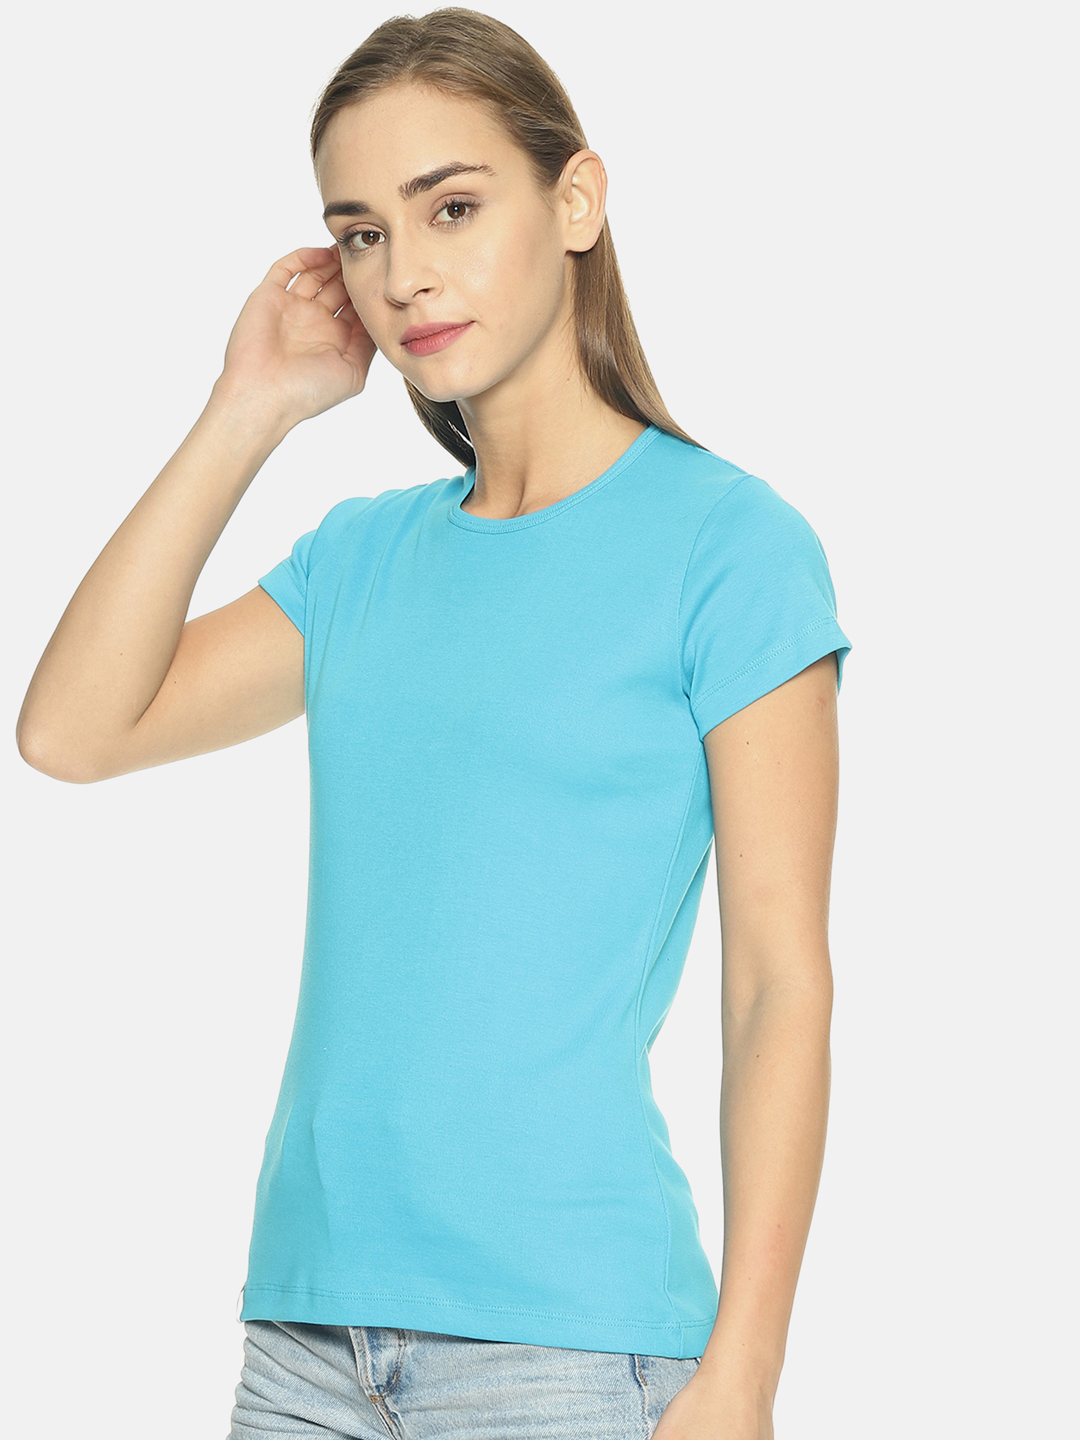 Women's Blue Round Neck T-shirt - Rvk